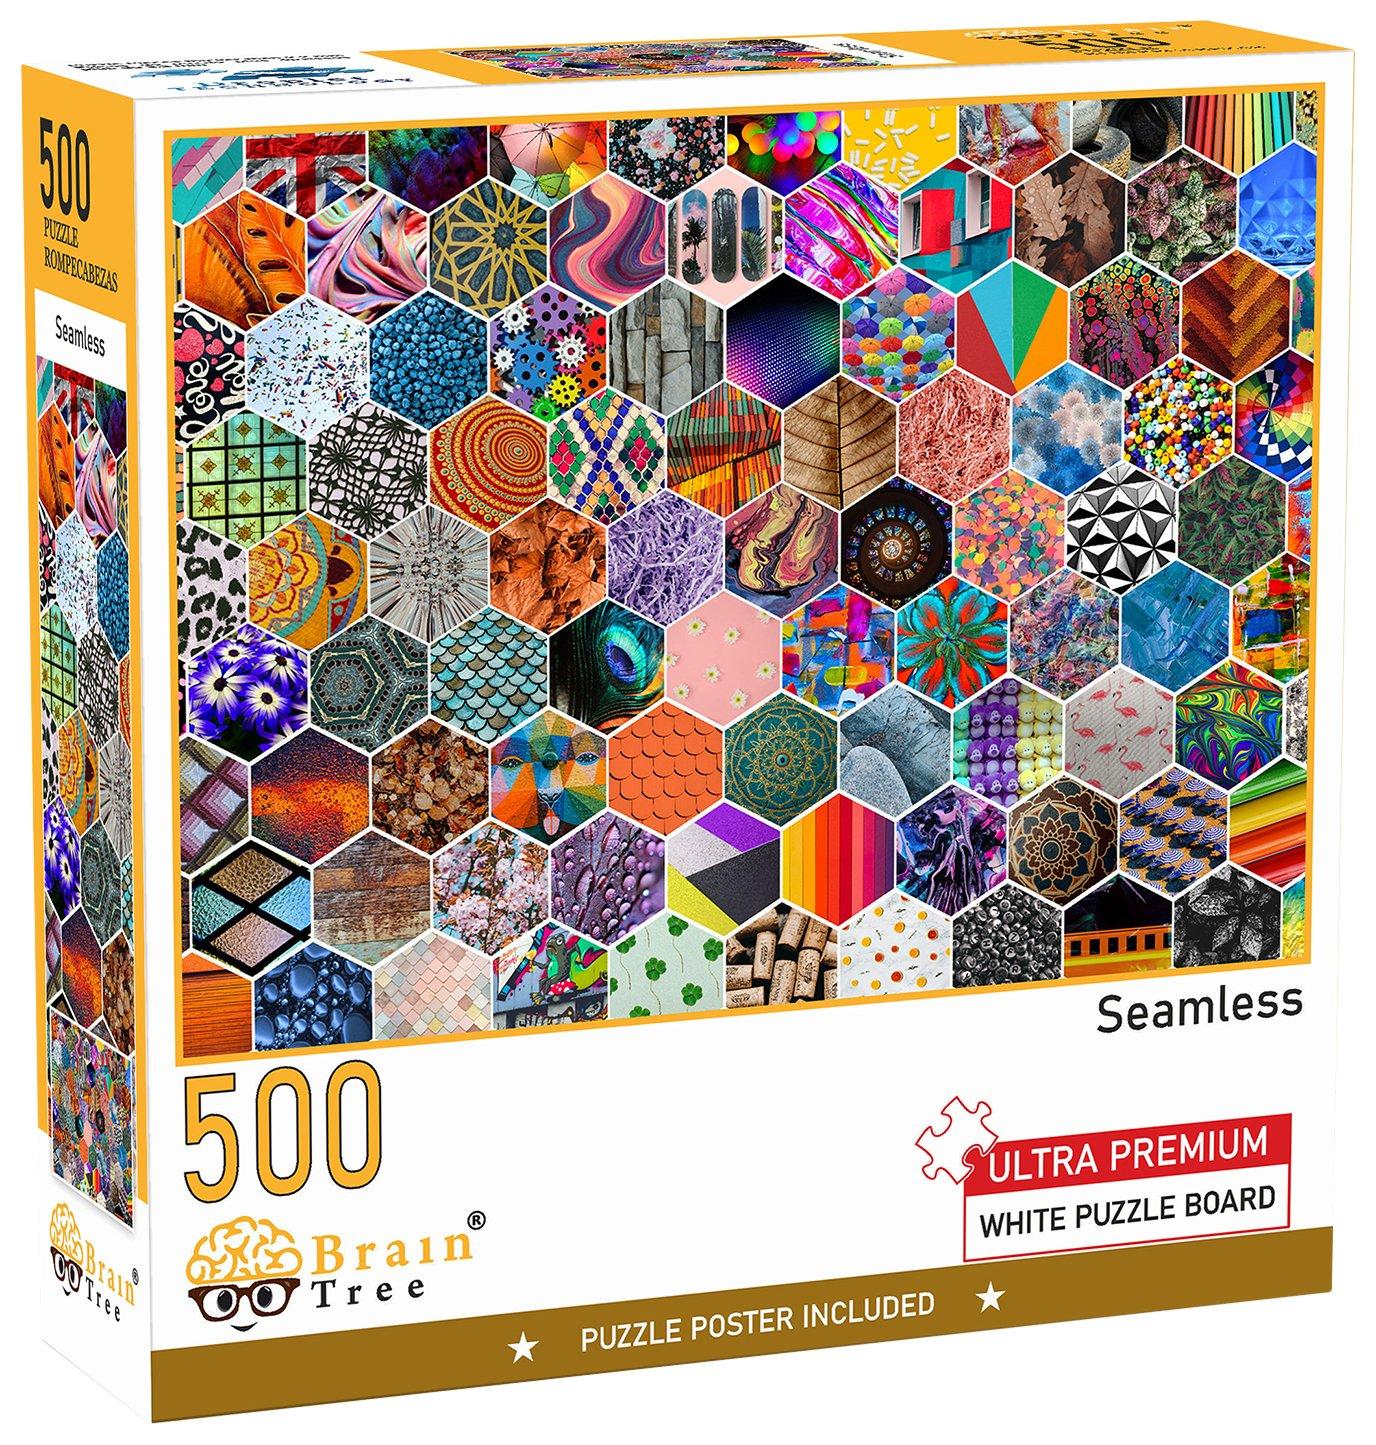 500 Piece Seamless Jigsaw Puzzle